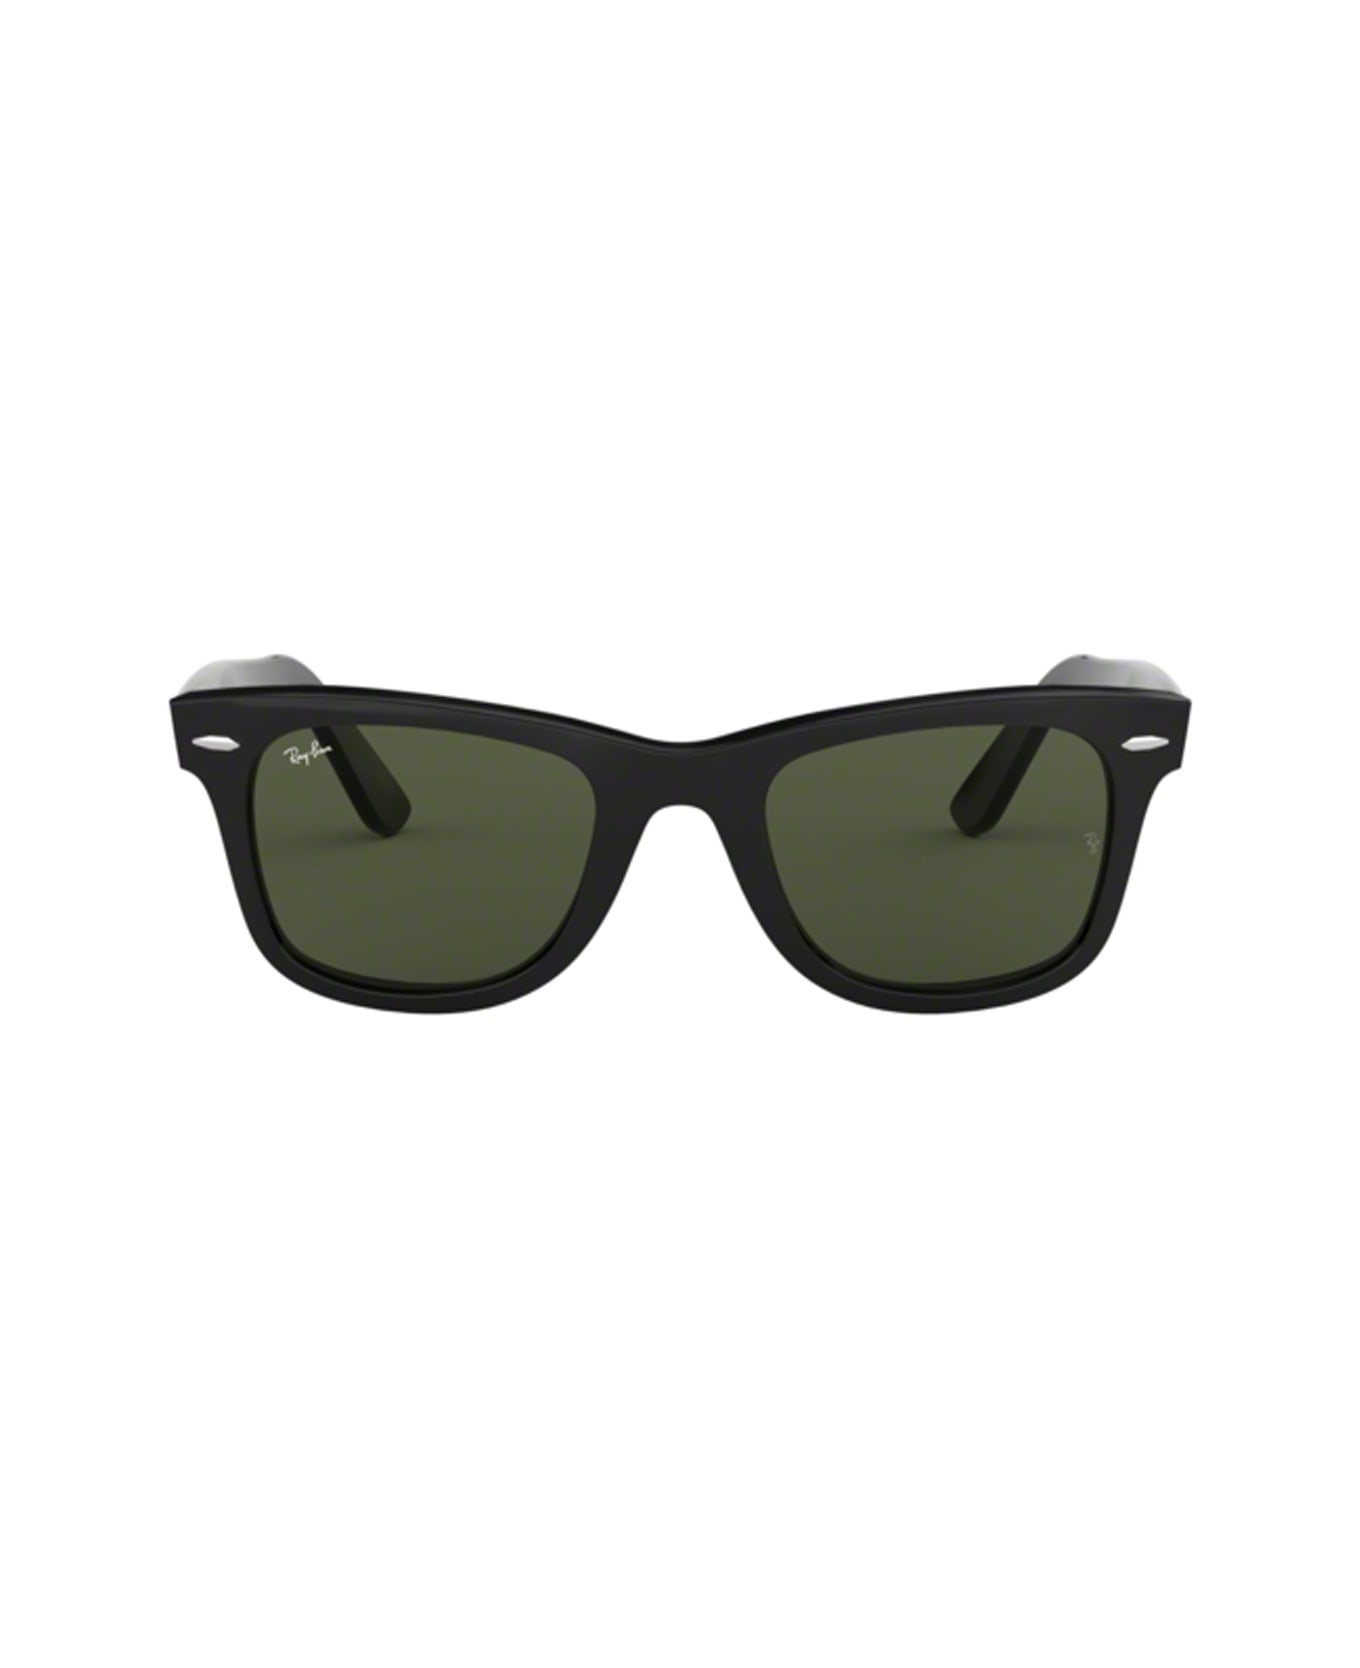 Ray-Ban Rb2140f 901 Sunglasses - Nero サングラス